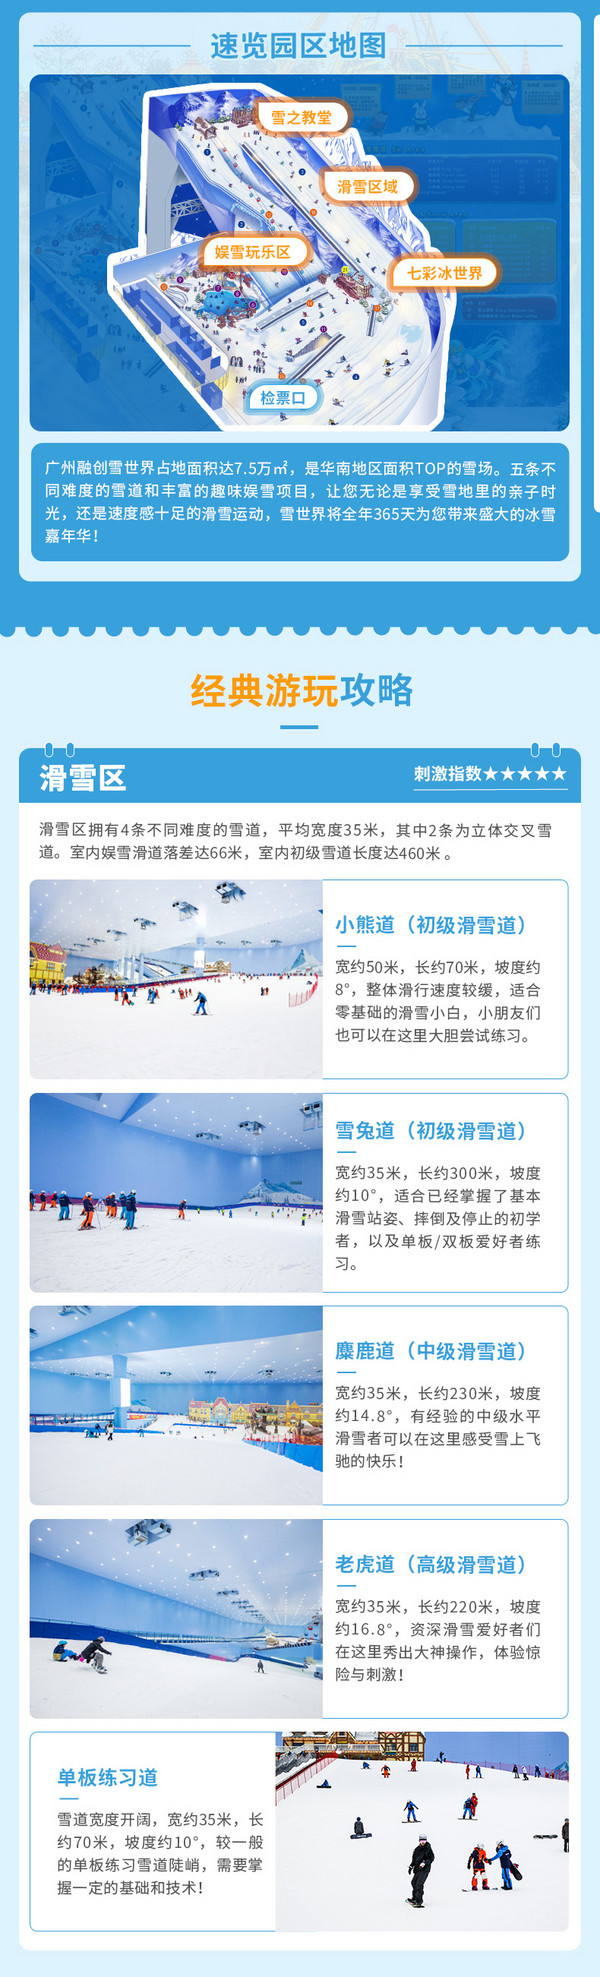 广州融创雪世界 3小时初中级道滑雪票